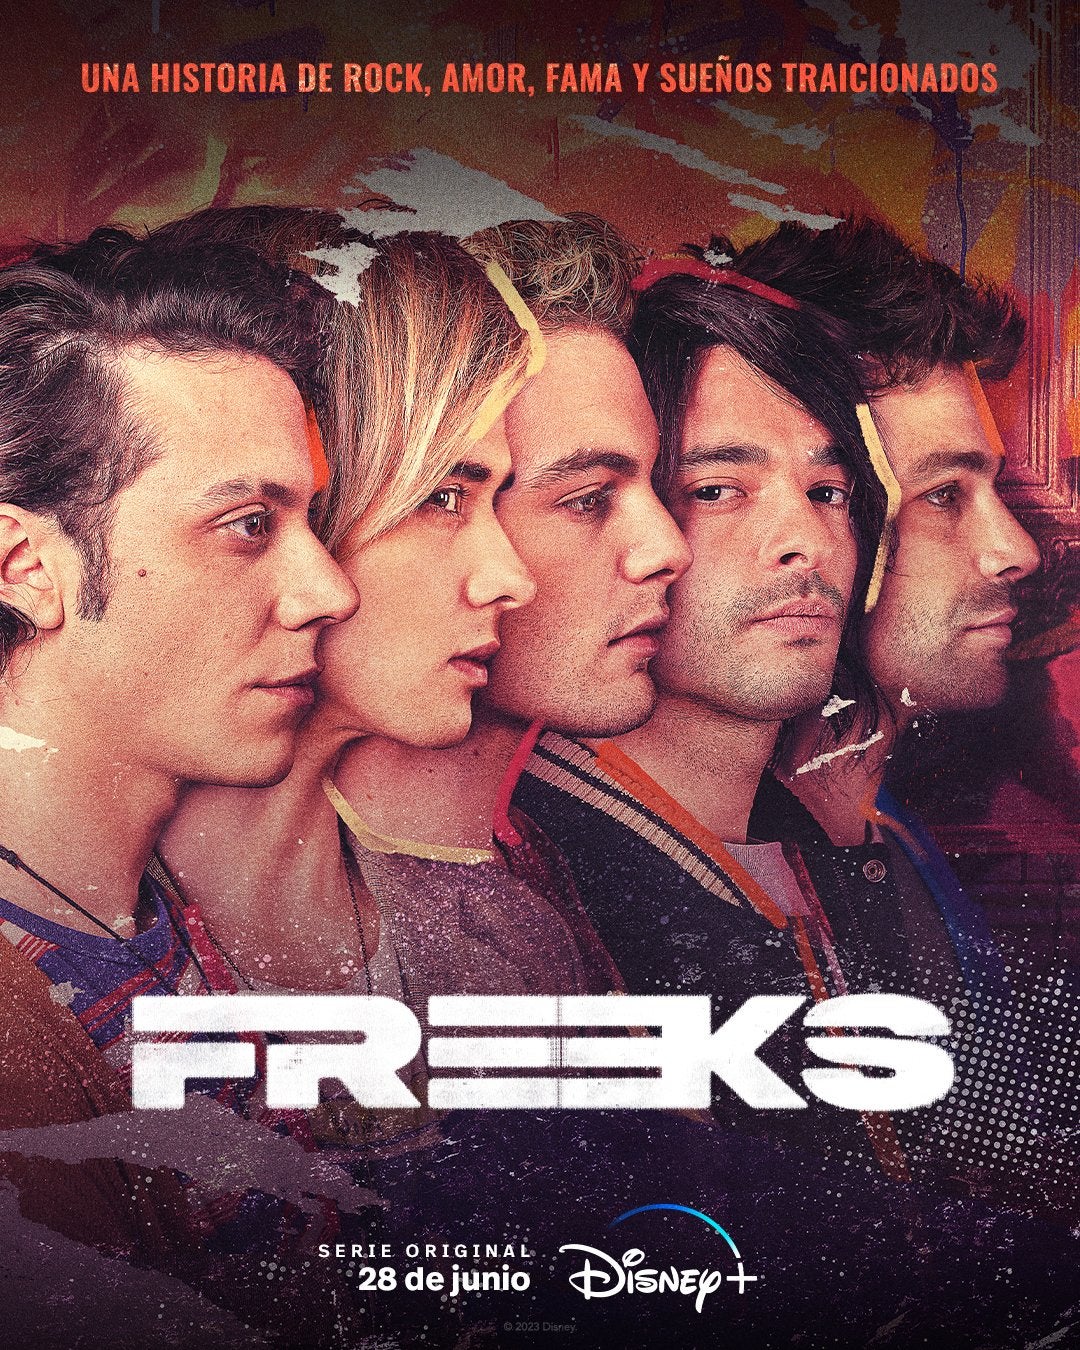 TV ratings for Freeks in Denmark. Disney+ TV series